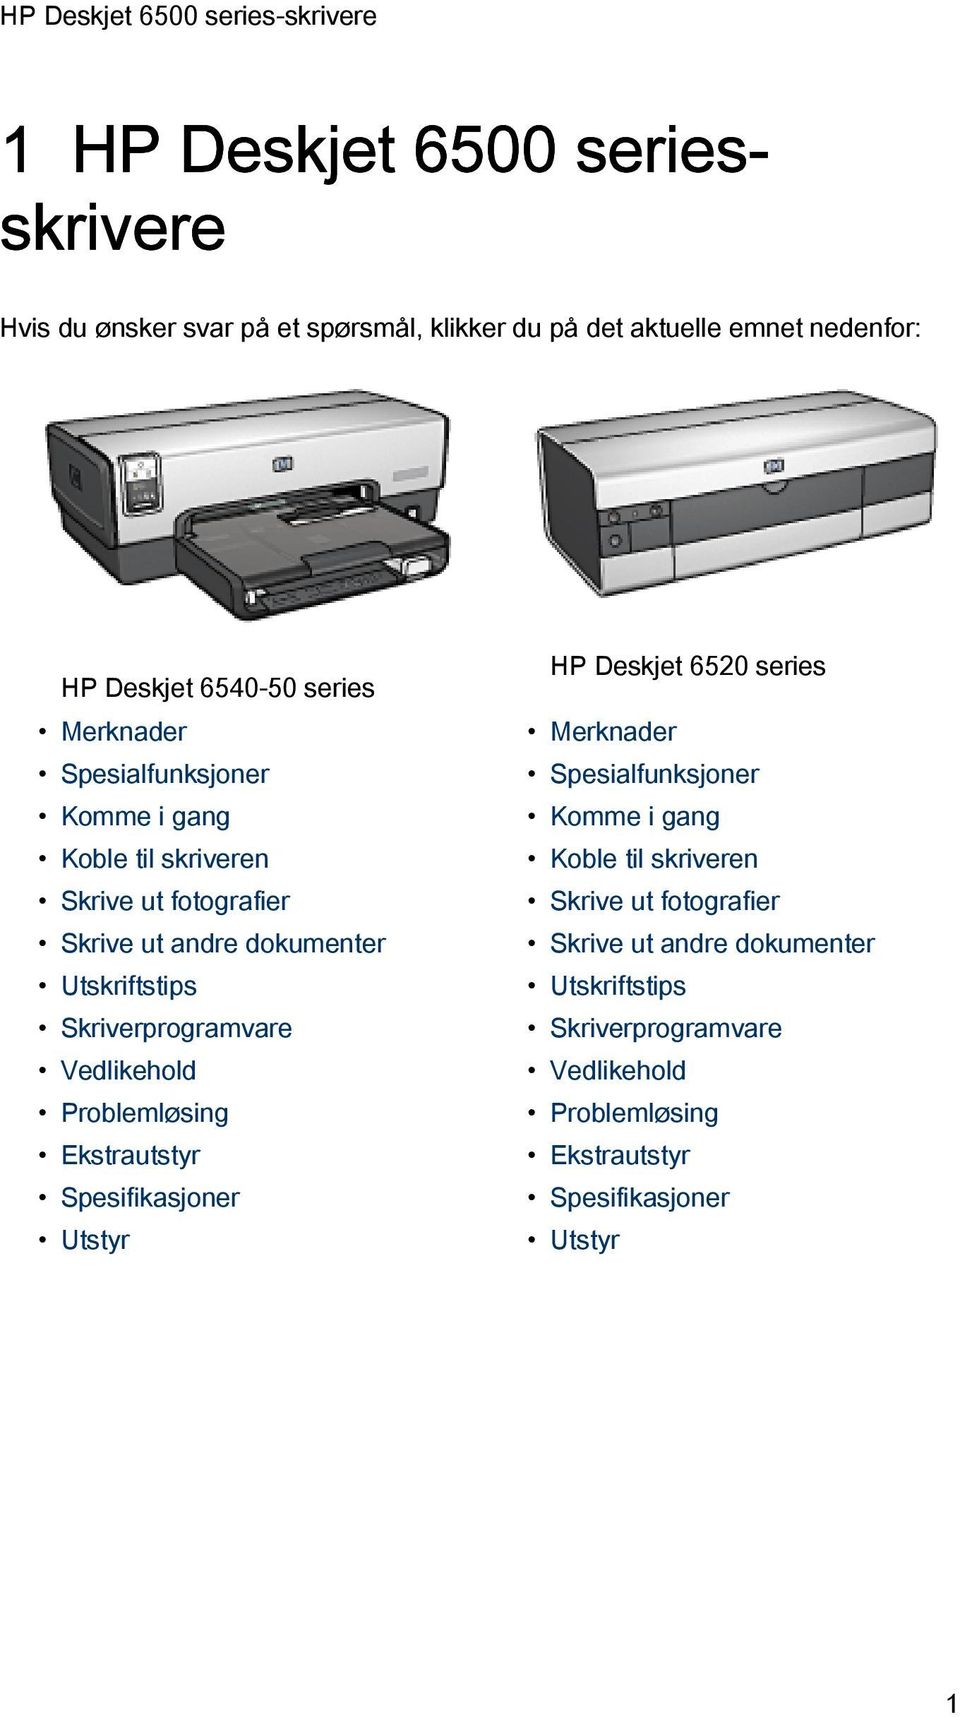 Vedlikehold Problemløsing Ekstrautstyr Spesifikasjoner Utstyr HP Deskjet 6520 series  Vedlikehold Problemløsing Ekstrautstyr Spesifikasjoner